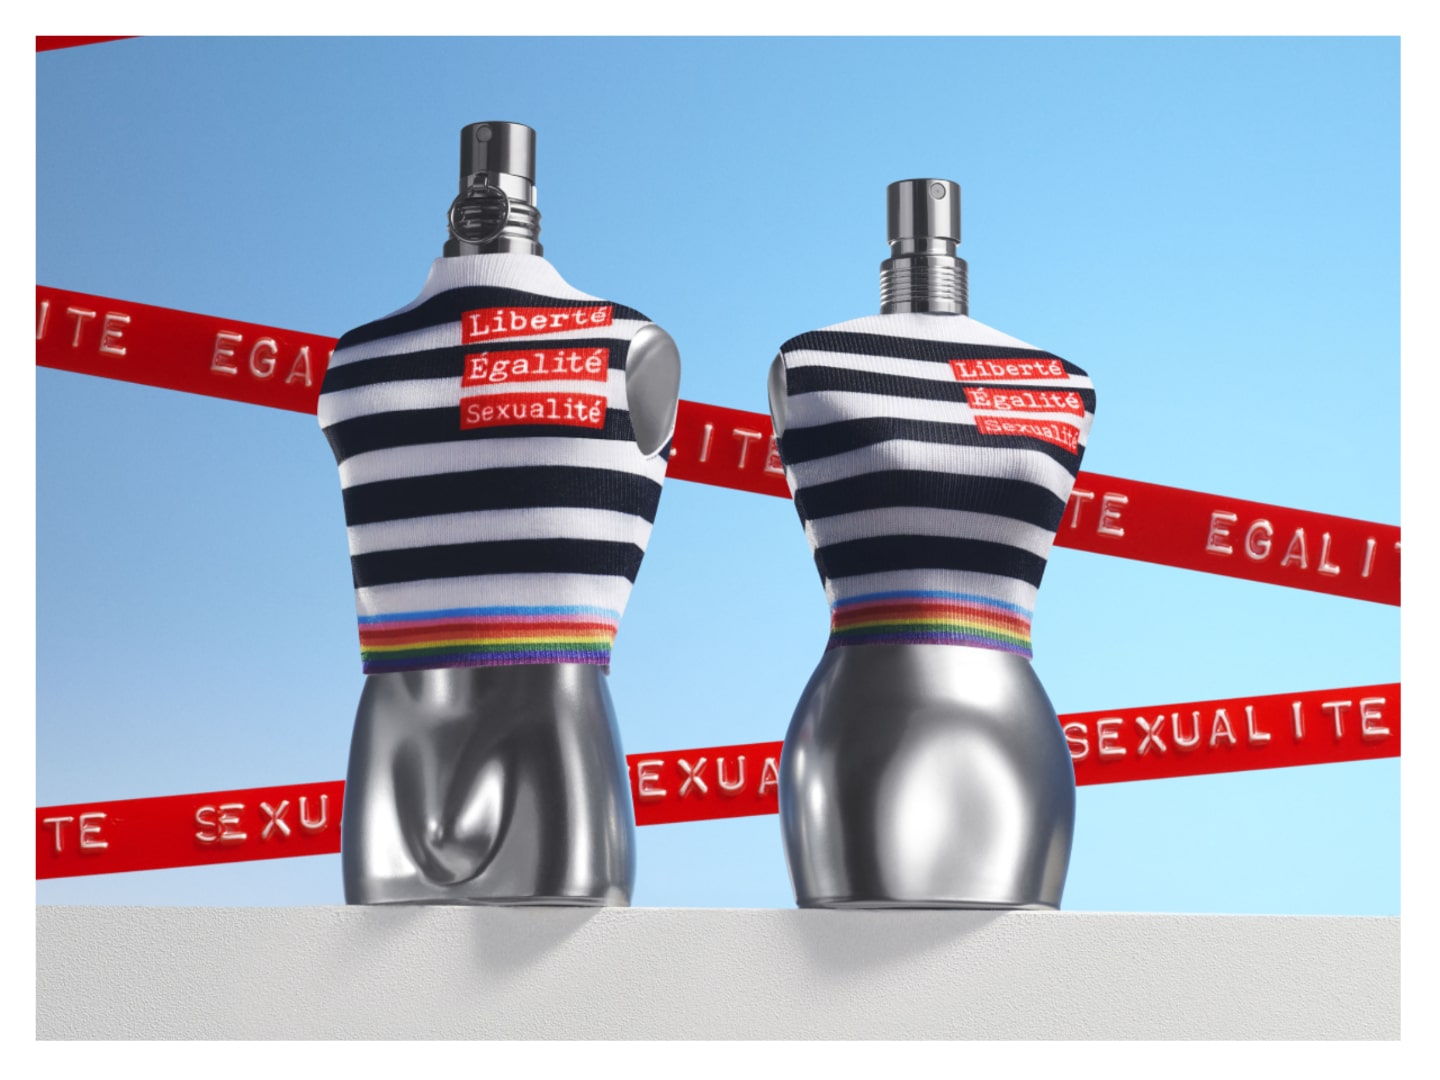 Autonoom toewijzen overschot Jean Paul Gaultier releases limited edition Pride perfume bottles